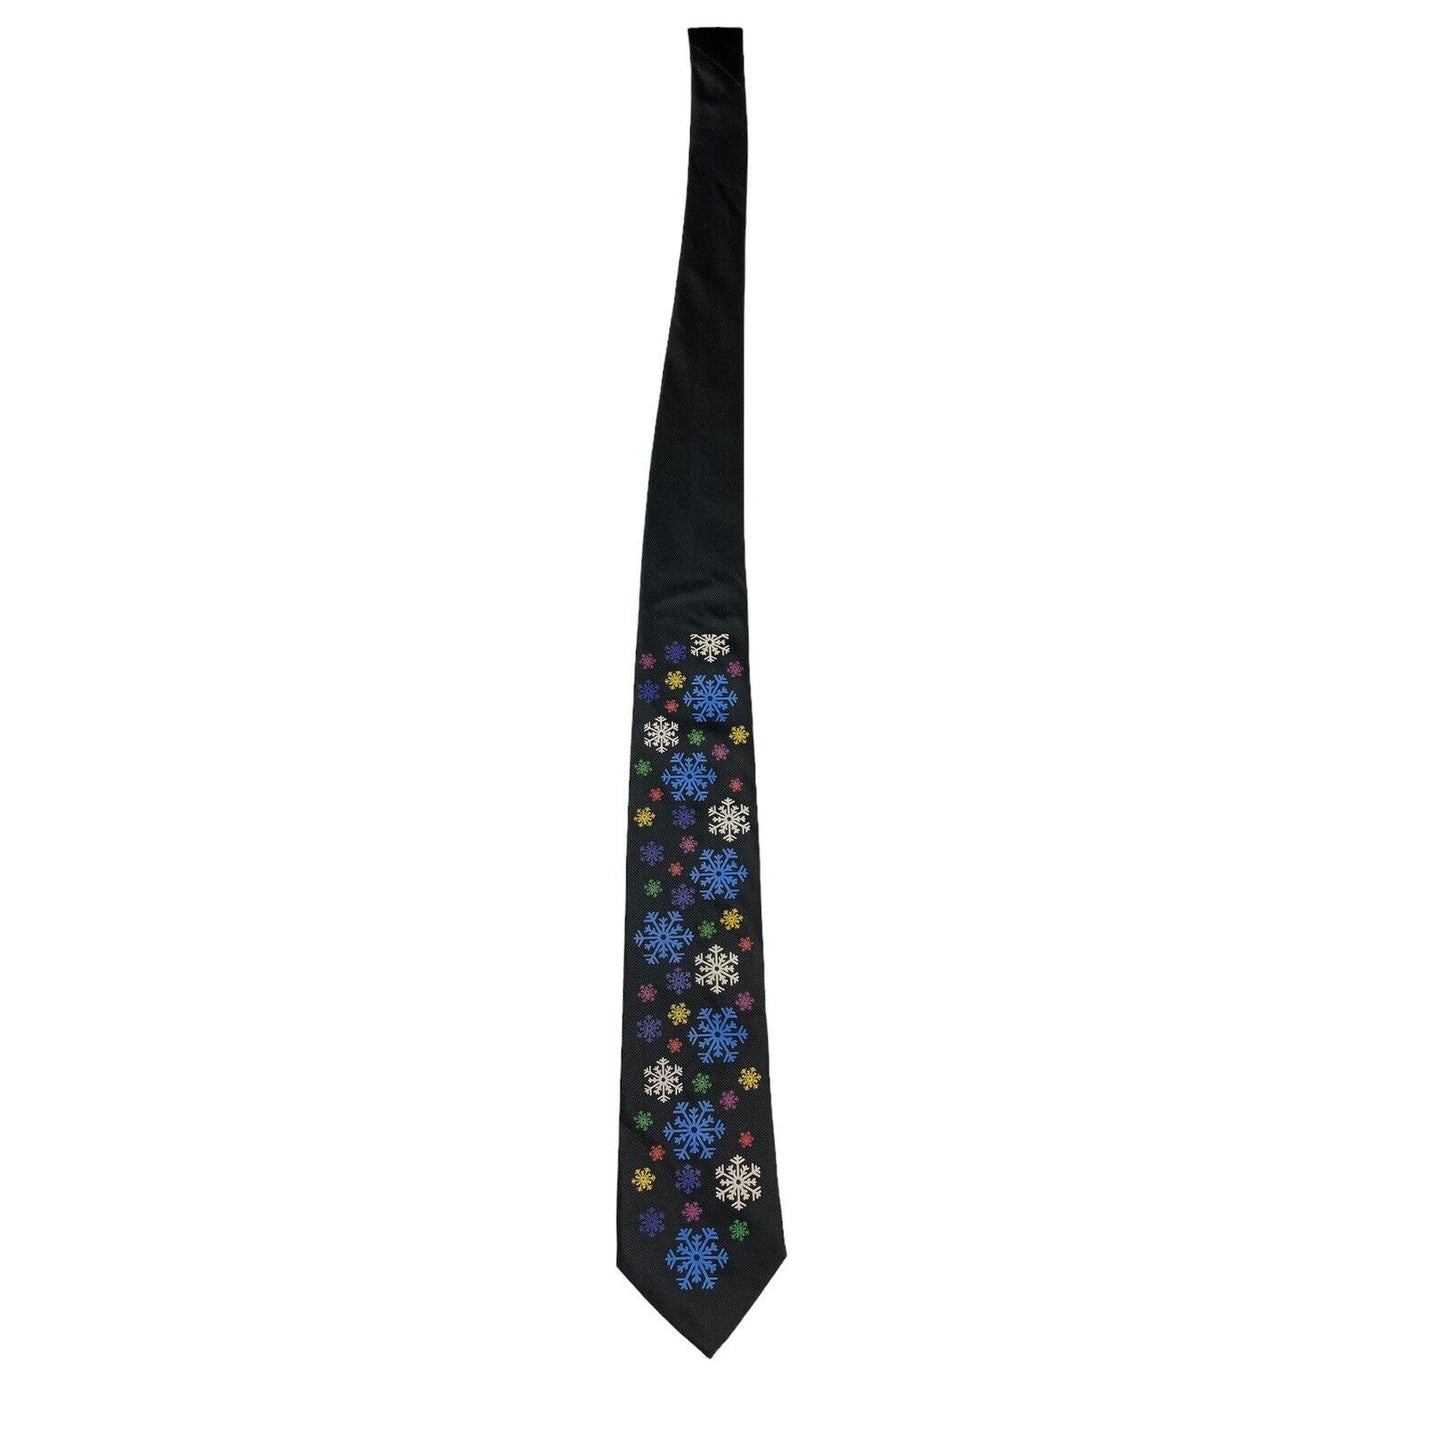 Hallmark Yule Tie Greetings Snowflakes Holiday Novelty Vintage Necktie